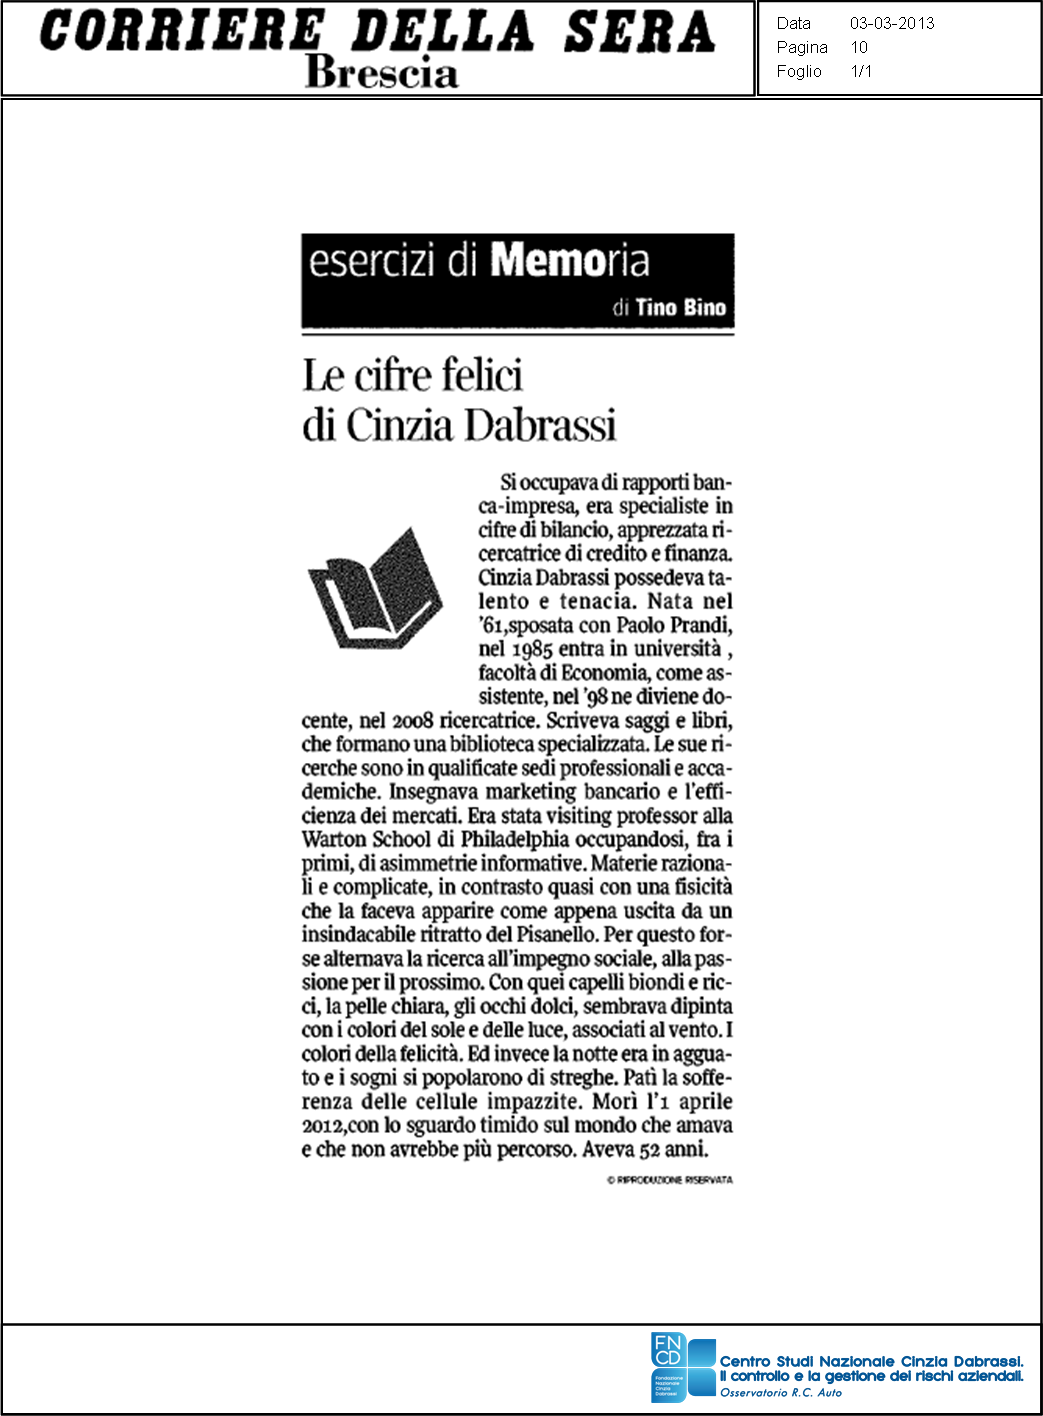 Corriere della sera, Brescia, 3 marzo 2013, Le cifre felici di Cinzia Dabrassi